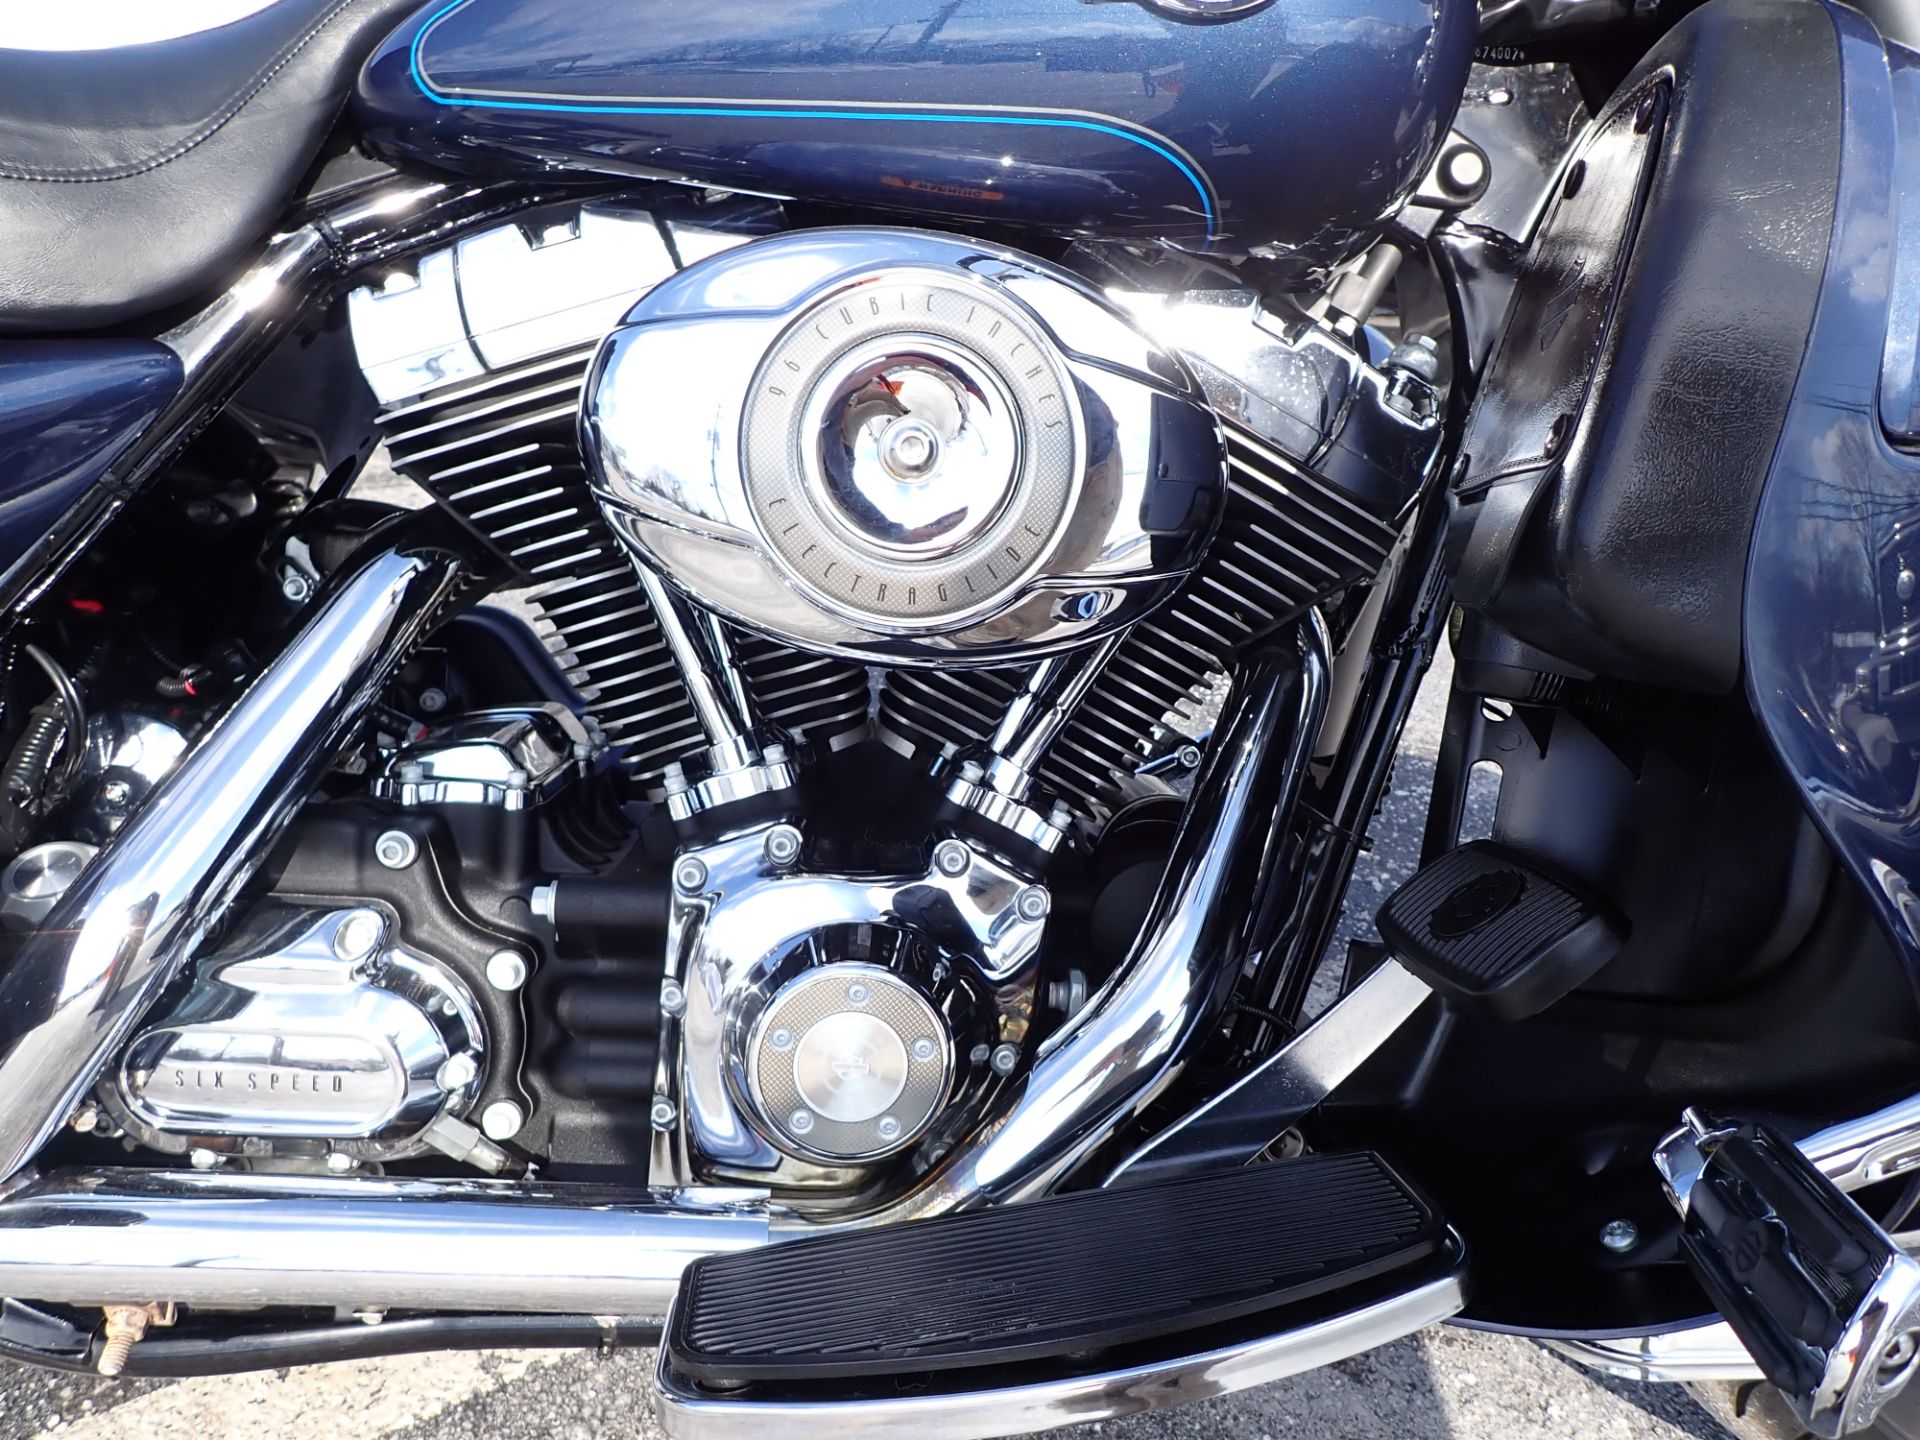 2008 Harley-Davidson Ultra Classic® Electra Glide® in Massillon, Ohio - Photo 4